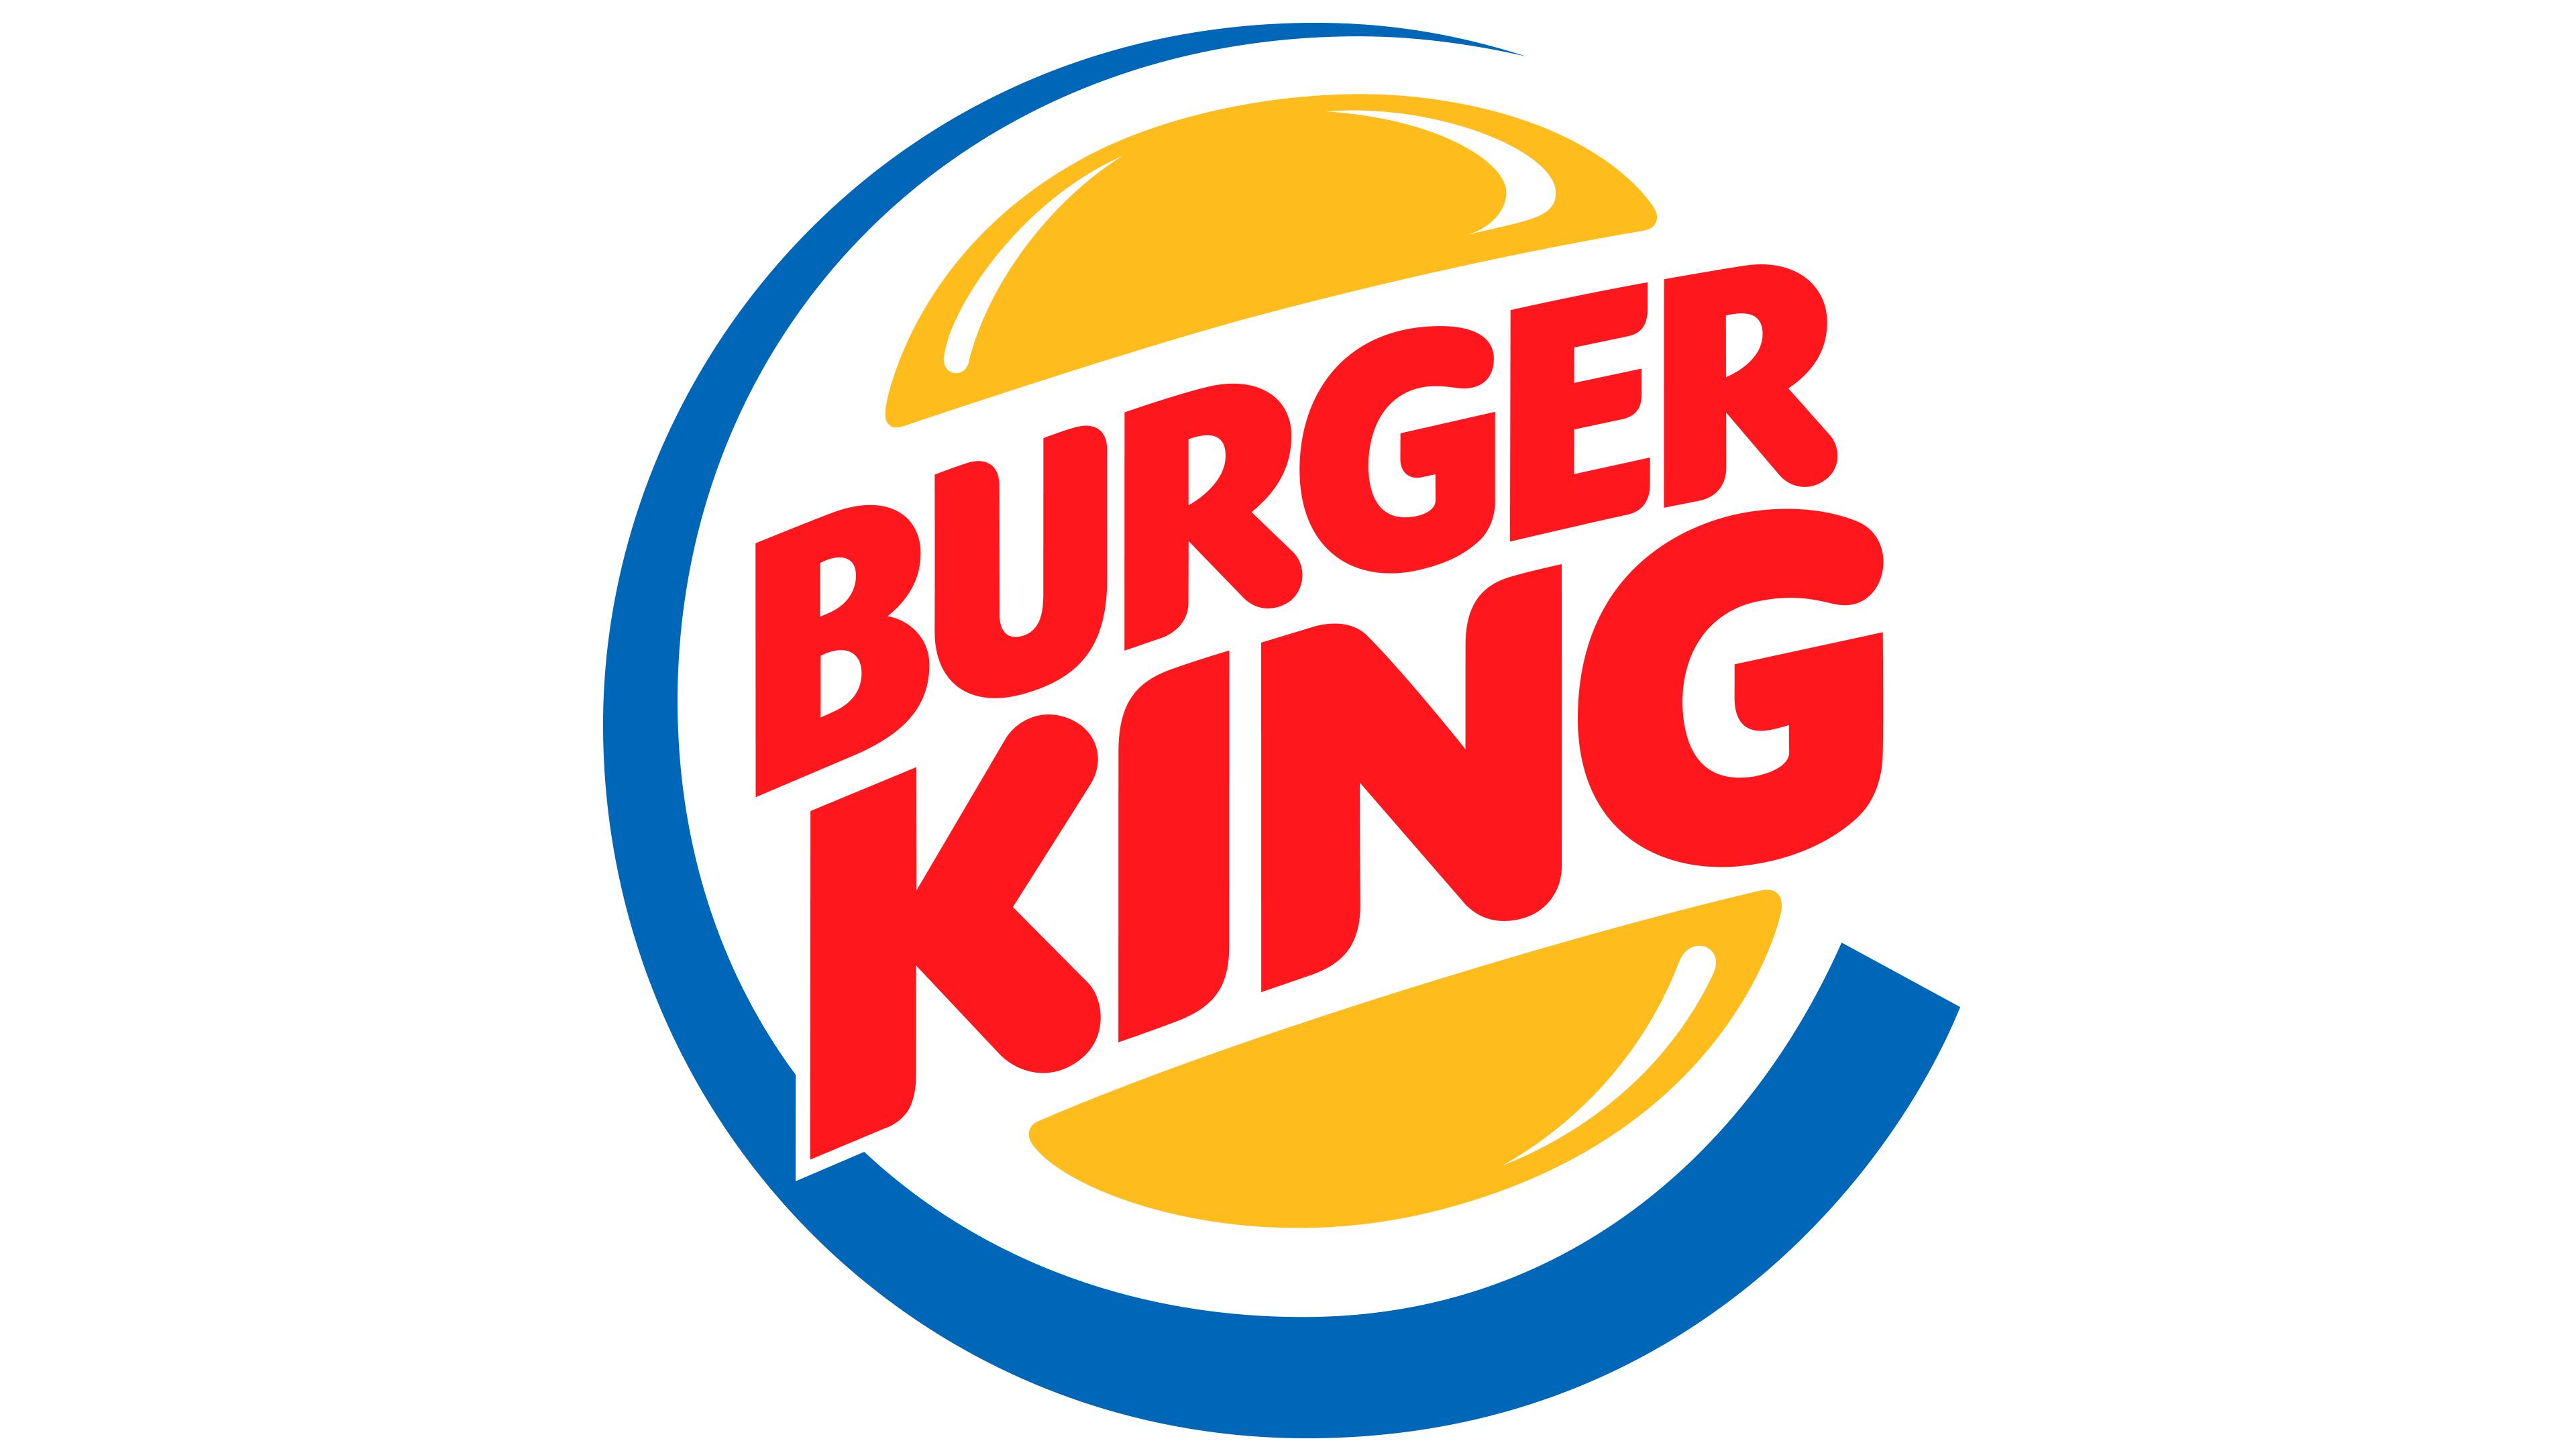 Tổng hợp 93+ hình về burger king mô hình self service - daotaonec